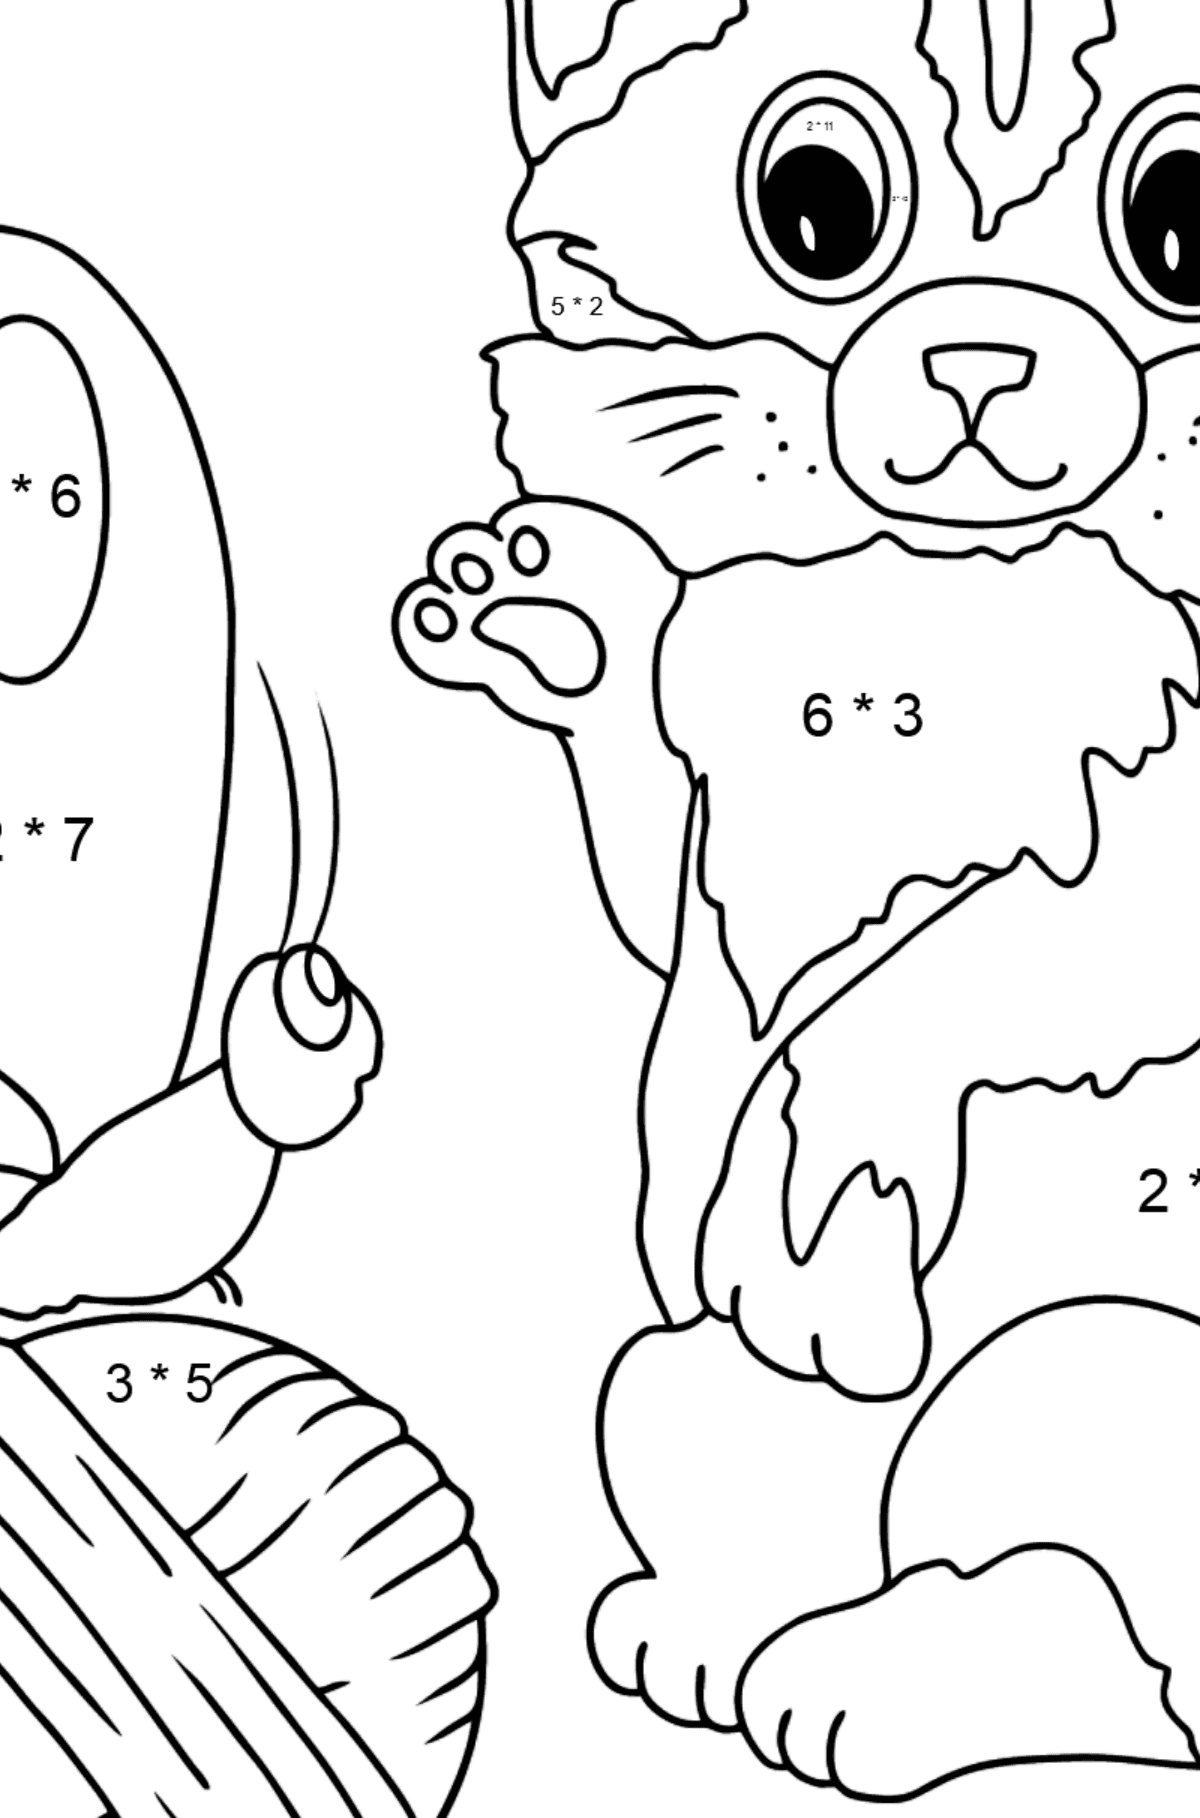 Disegno da colorare di gattino - Colorazione matematica - Moltiplicazione per bambini